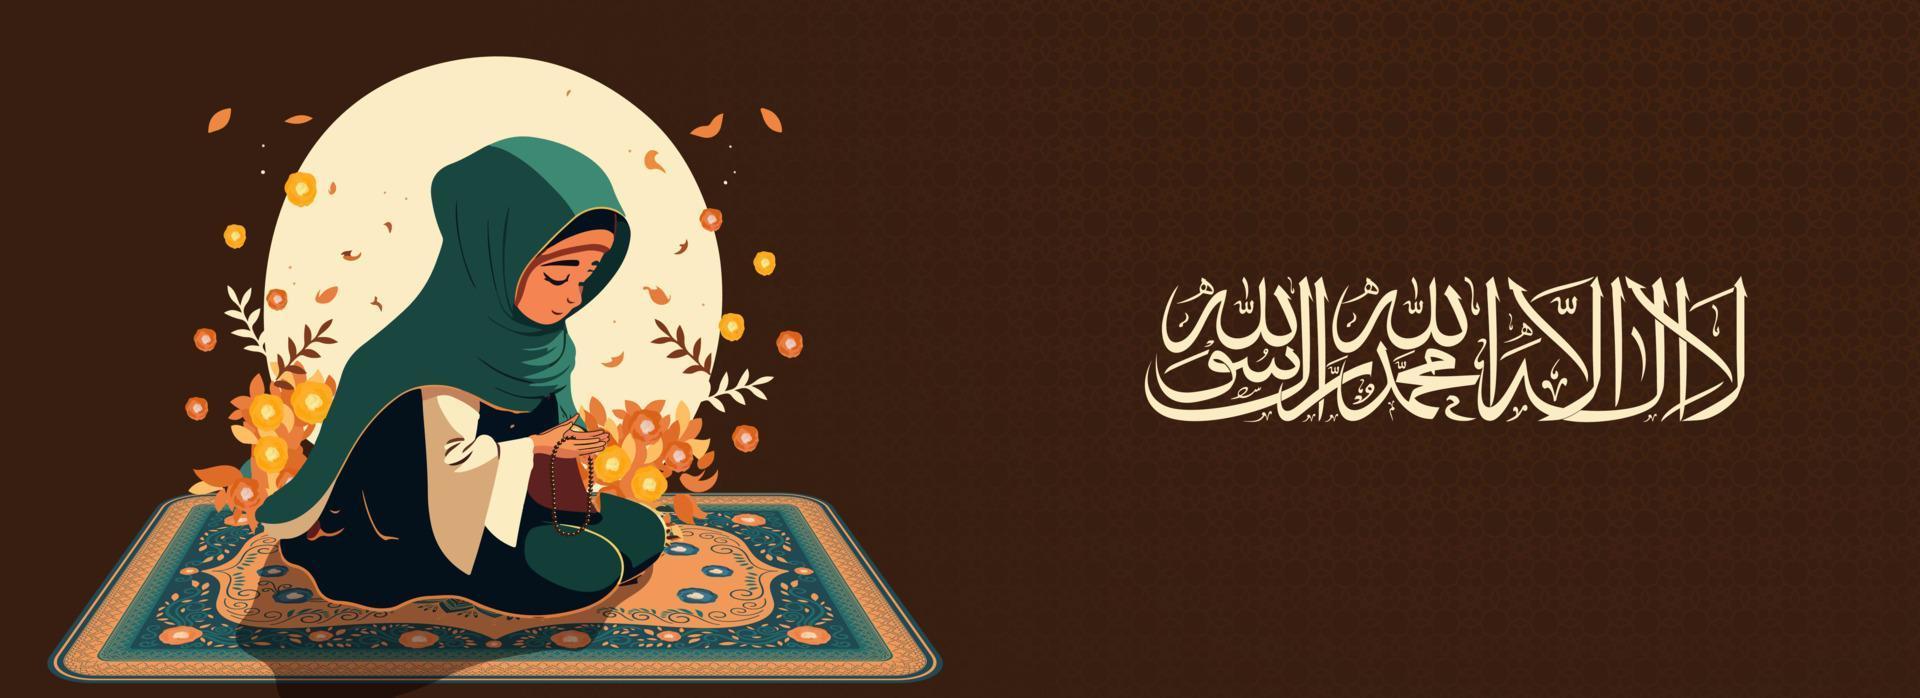 Arabisch islamisch Kalligraphie von Wunsch Dort ist Nein einer würdig von Anbetung außer Allah und Muhammad und Muslim Frau Charakter beten mit halt tasbih auf Matte. vektor